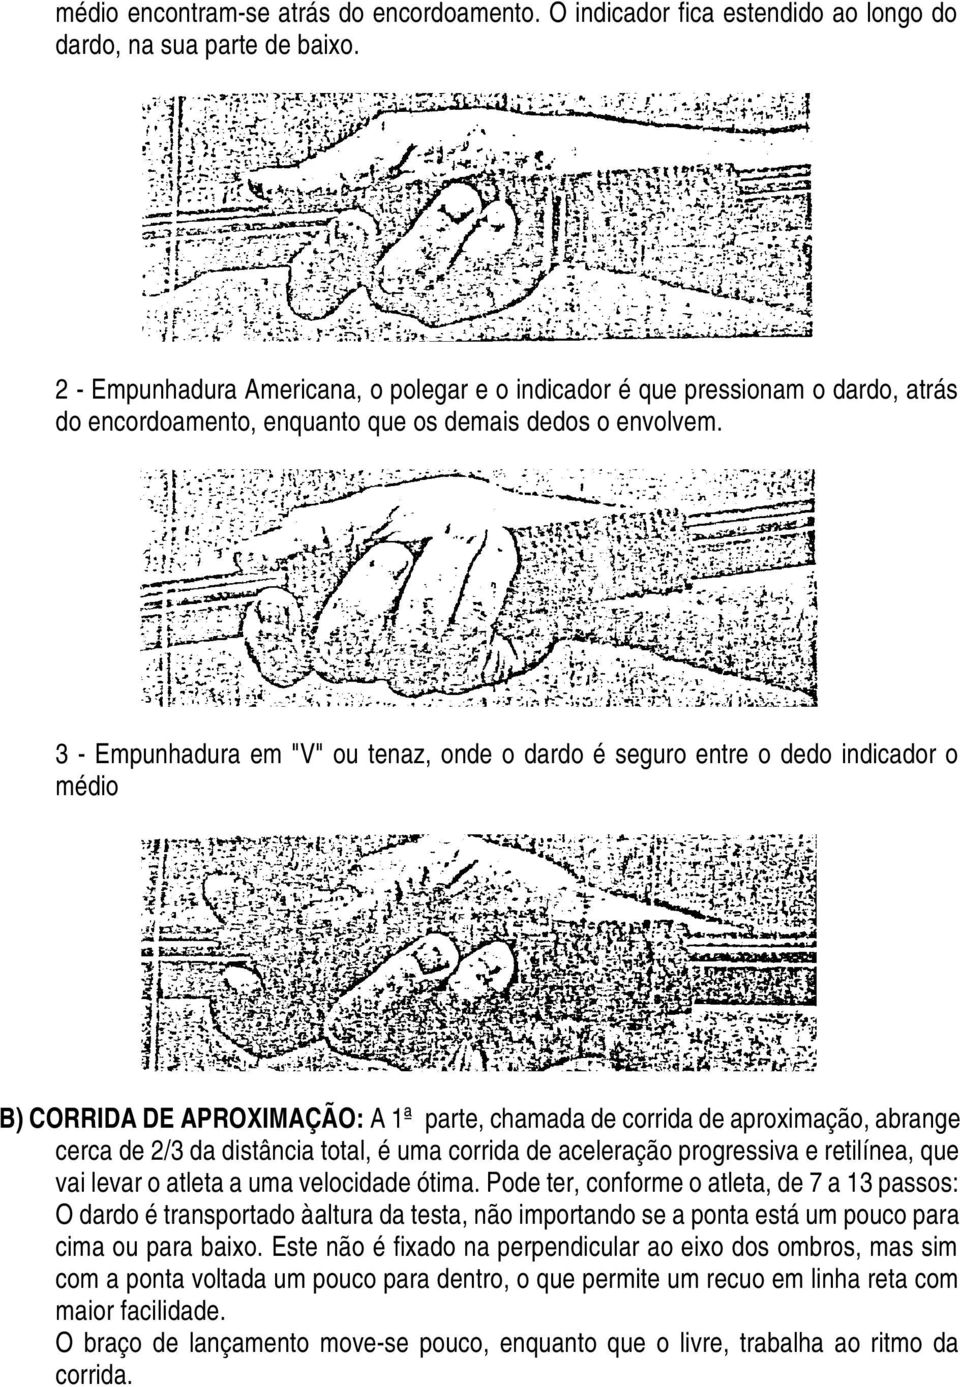 3 - Empunhadura em "V" ou tenaz, onde o dardo é seguro entre o dedo indicador o médio B) CORRIDA DE APROXIMAÇÃO: A 1ª parte, chamada de corrida de aproximação, abrange cerca de 2/3 da distância